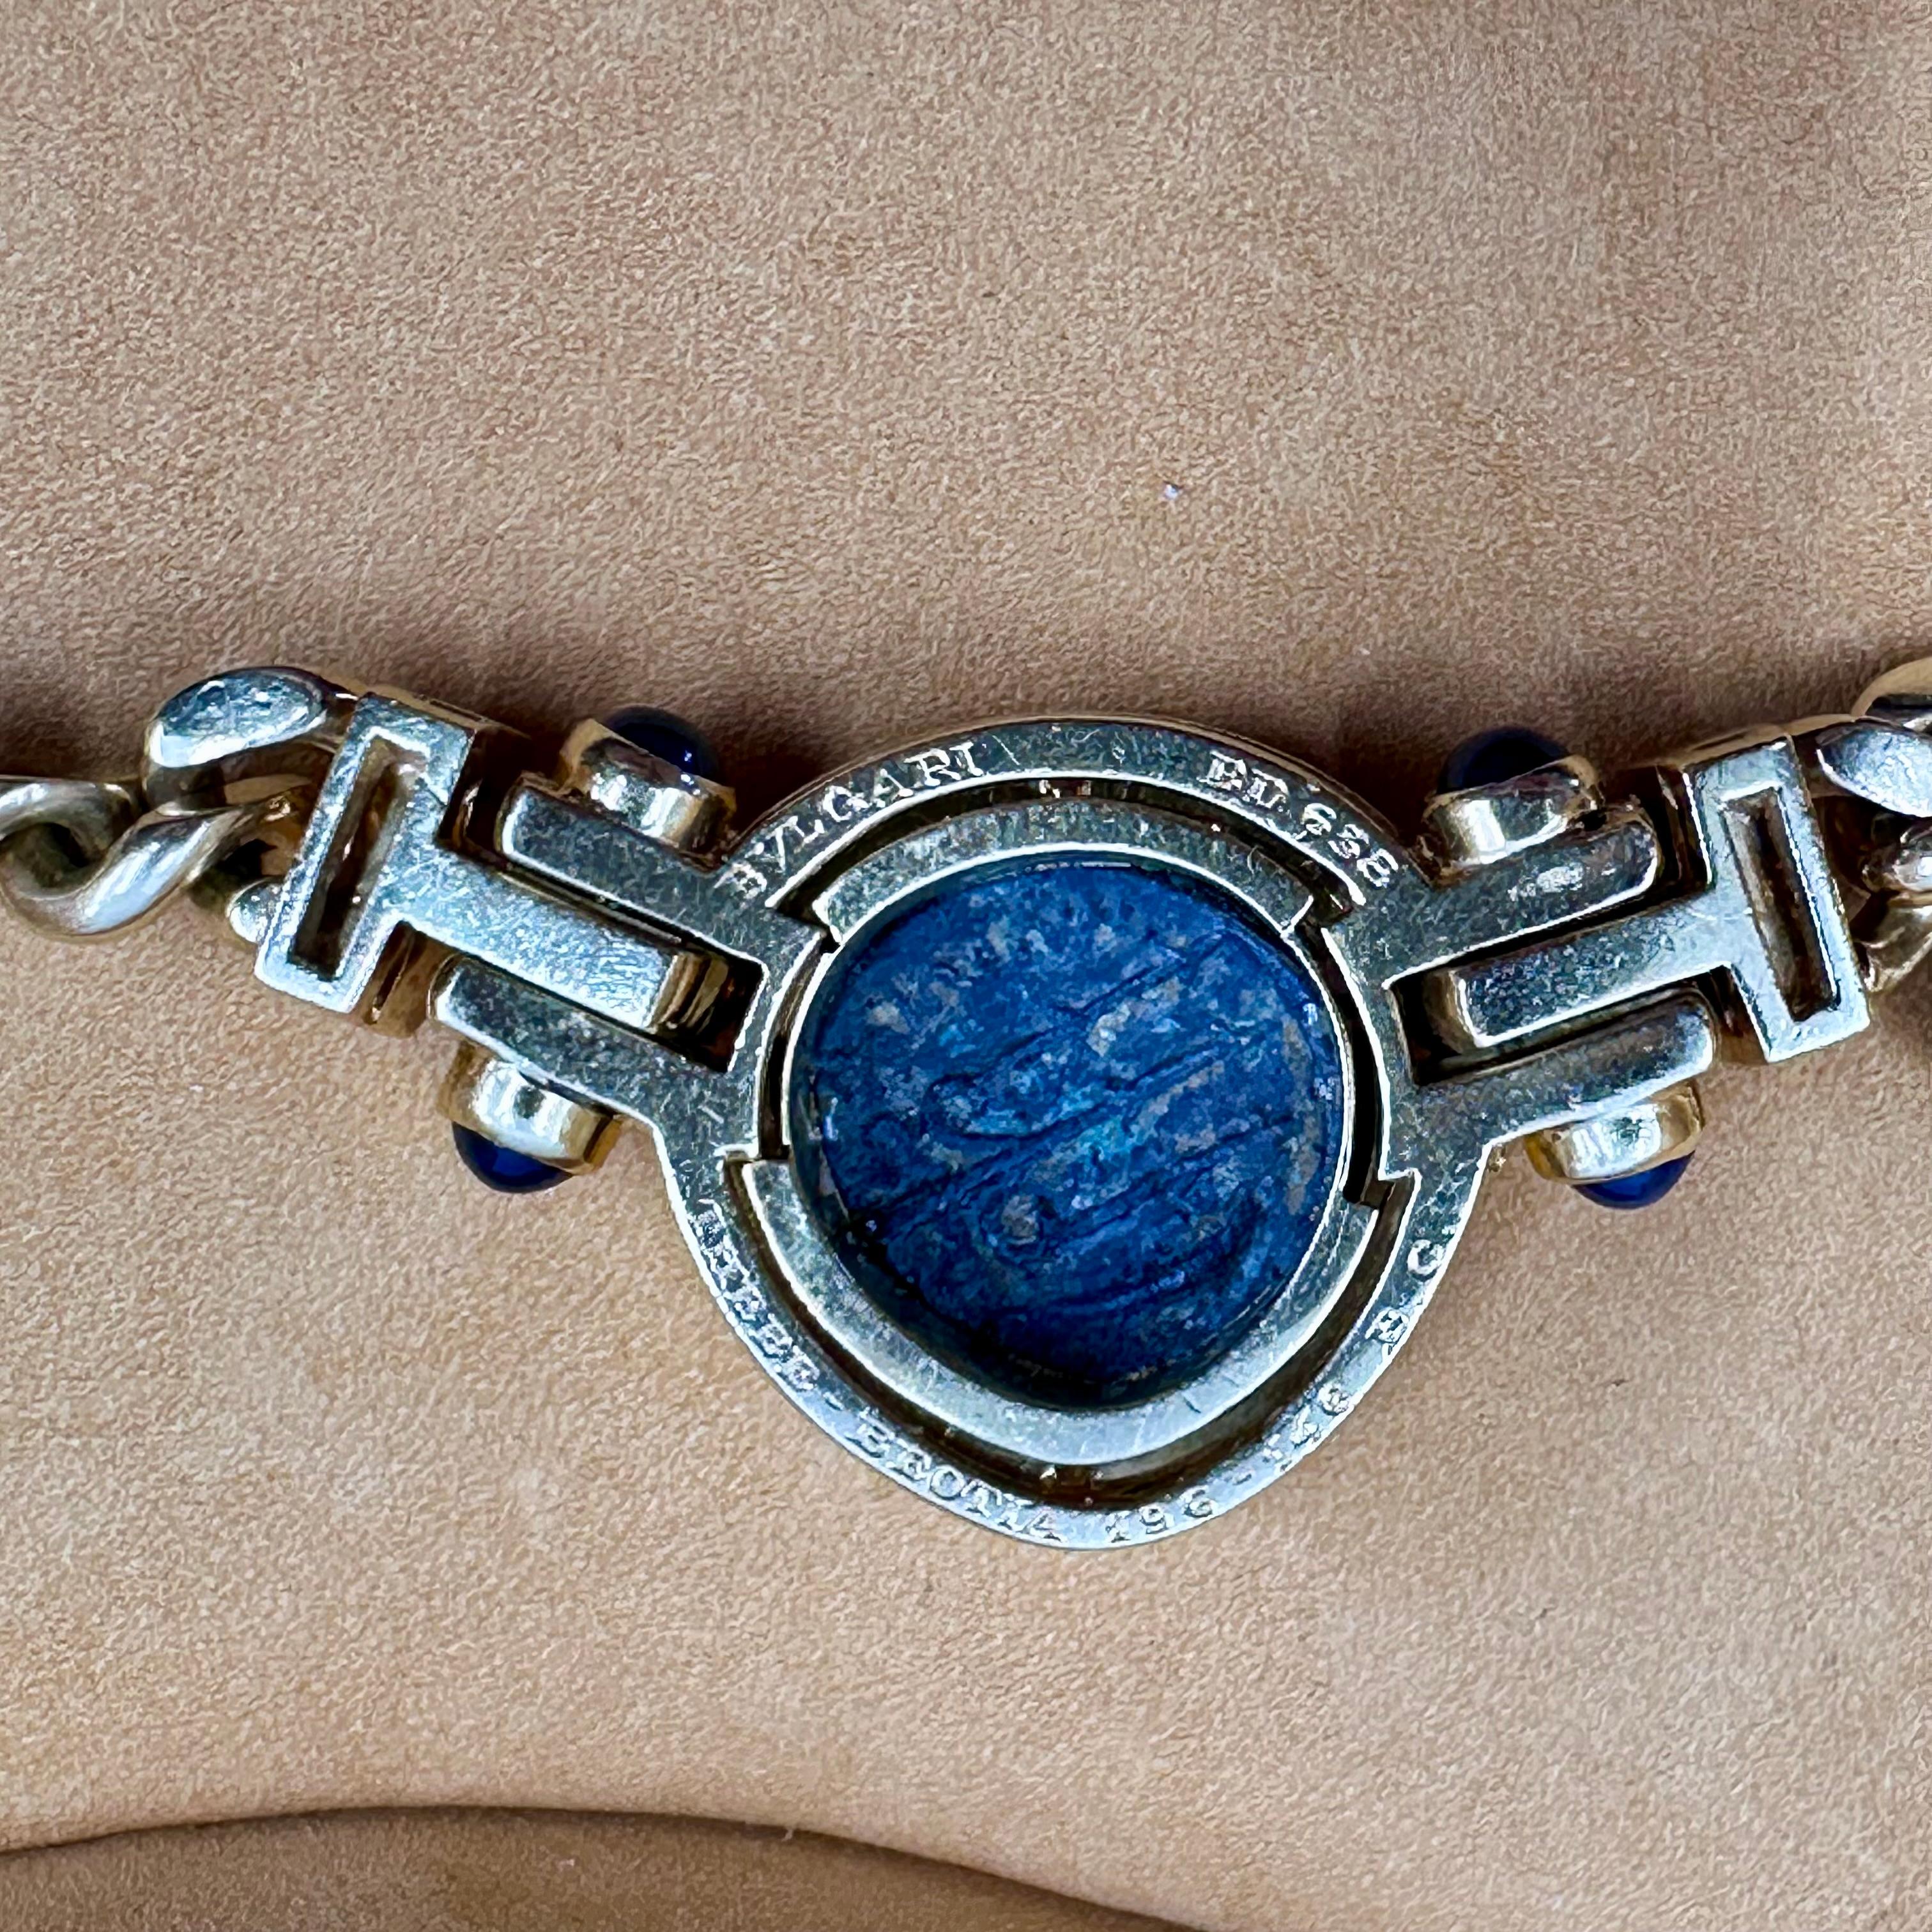 Halskette von Bvlgari Monete aus Gold mit antiker Münze und blauem Saphir (Cabochon)